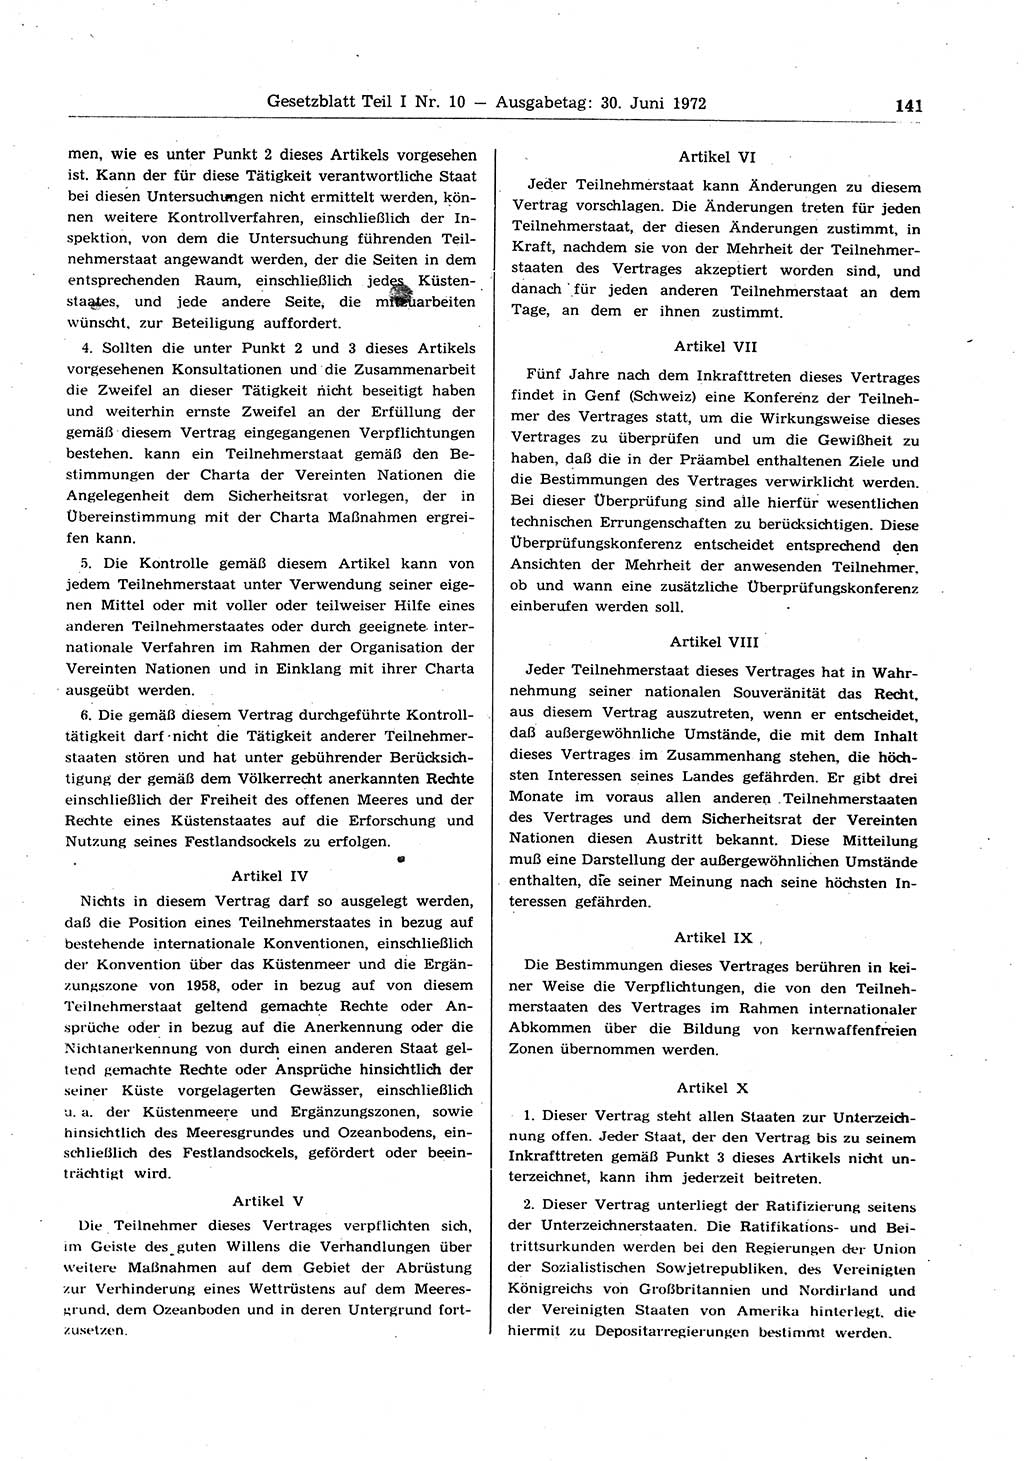 Gesetzblatt (GBl.) der Deutschen Demokratischen Republik (DDR) Teil Ⅰ 1972, Seite 141 (GBl. DDR Ⅰ 1972, S. 141)